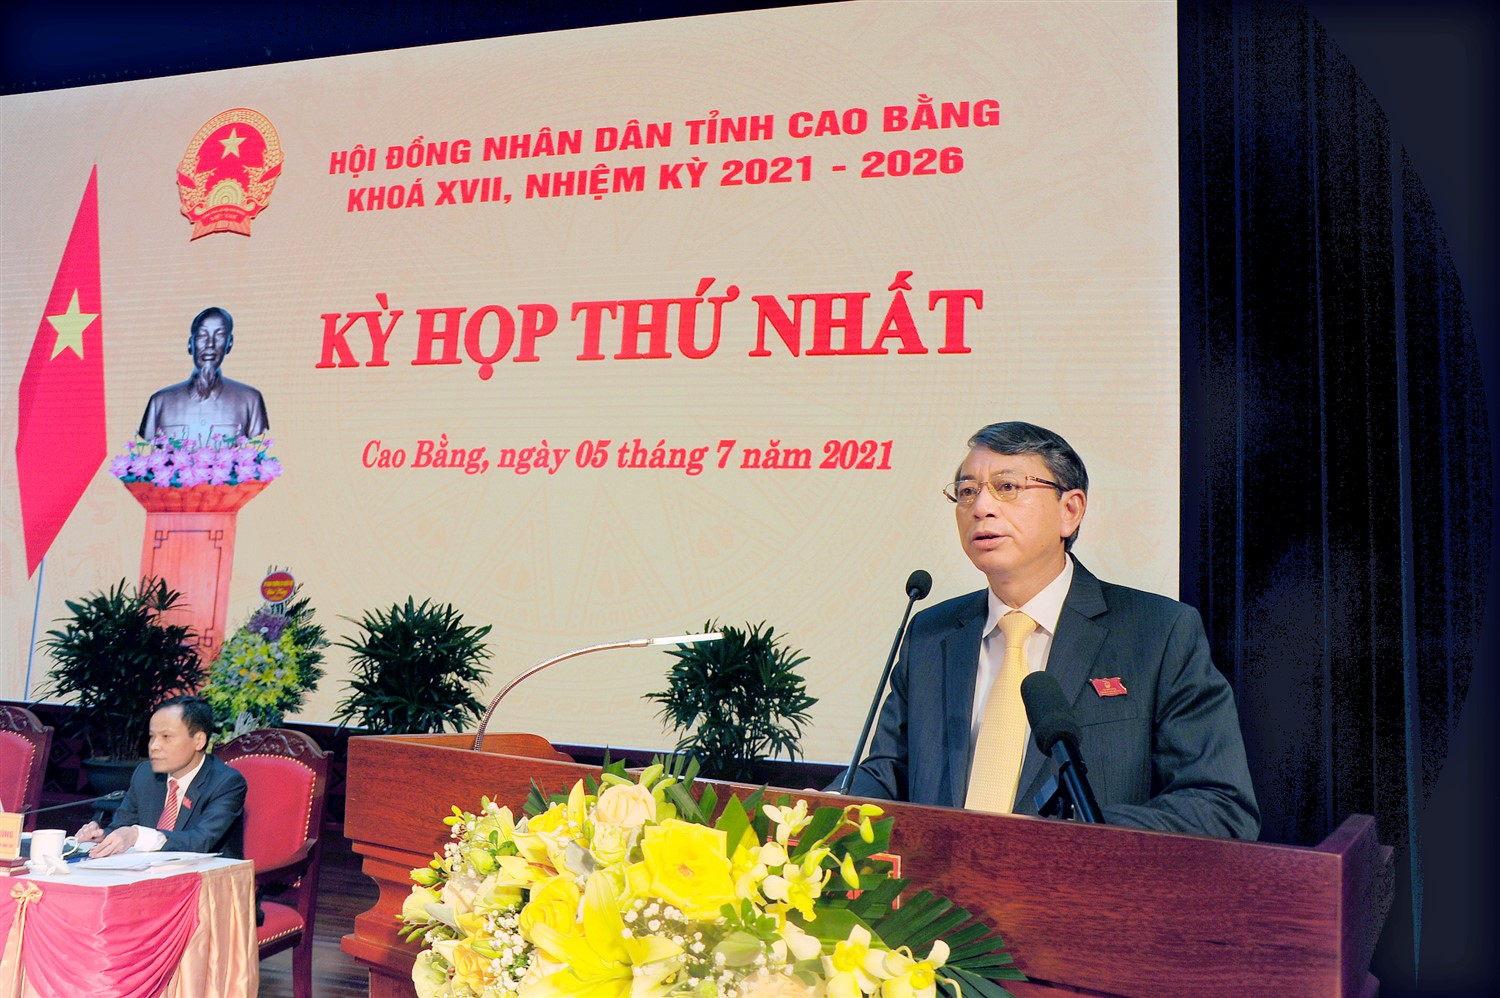 Phó bí thư Tình ủy, Chủ tịch UBND tỉnh Hoàng Xuân Ánh phát biểu nhận nhiệm vụ